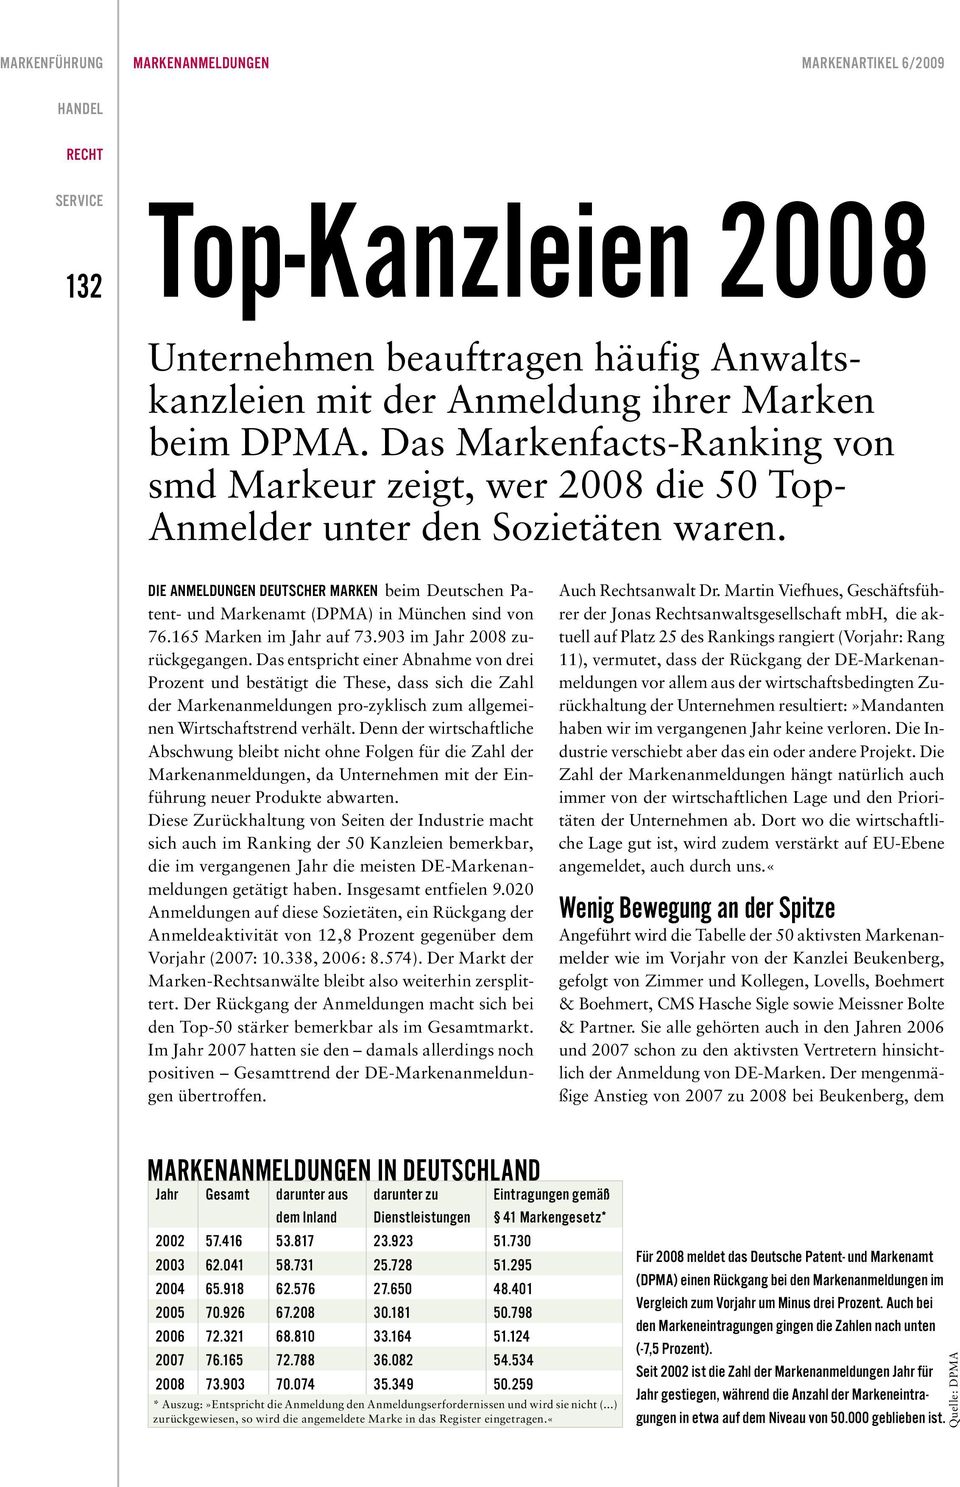 DIE ANMELDUNGEN DEUTSCHER MARKEN beim Deutschen Patent- und Markenamt (DPMA) in München sind von 76.165 Marken im Jahr auf 73.903 im Jahr 2008 zurückgegangen.